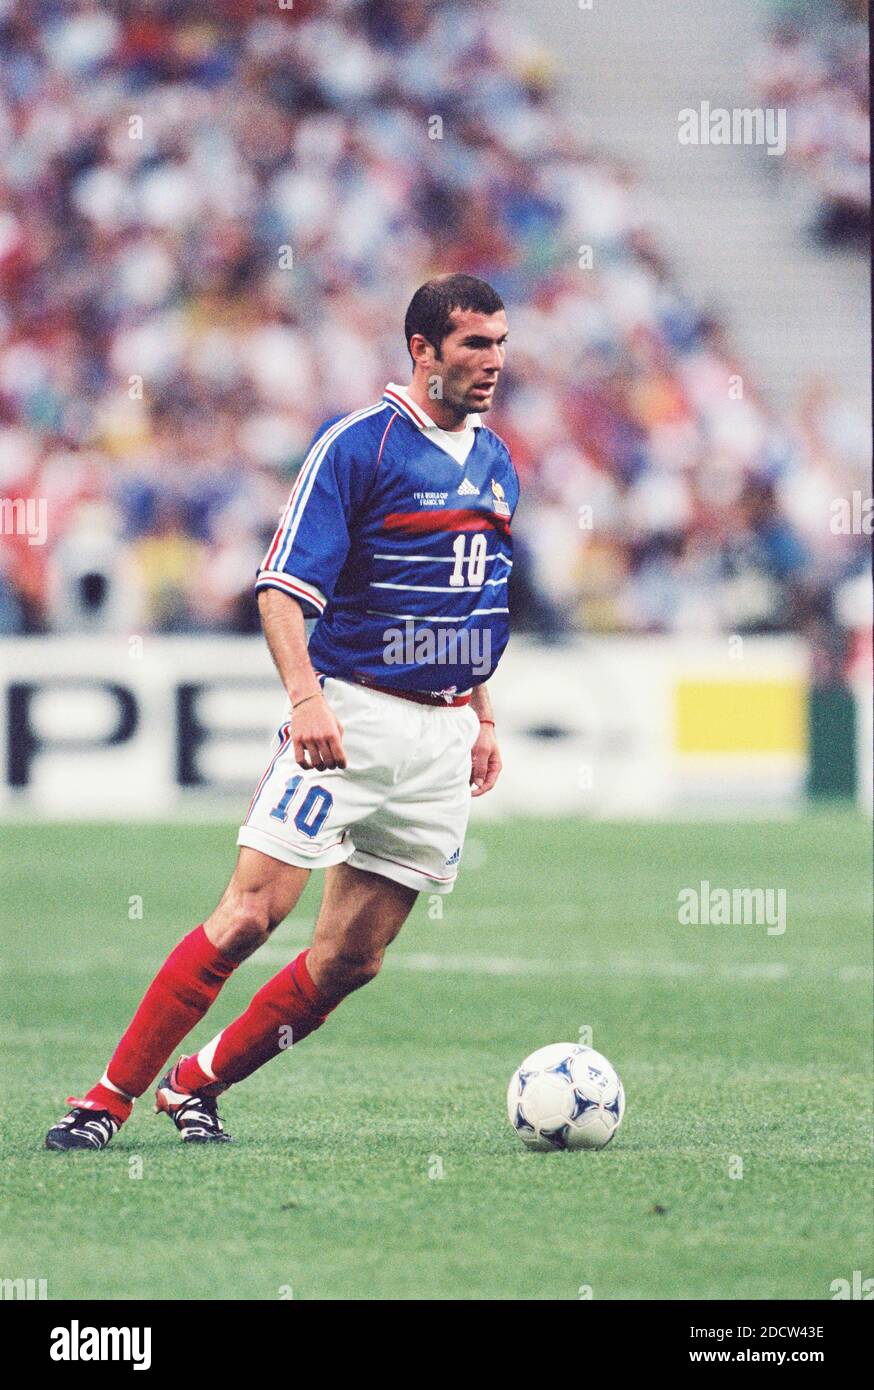 La francesa Zinedine Zidane durante la Copa Mundial de Fútbol de la FIFA Francia contra Brasil en el estadio Stade de France en Saint-Denis, cerca de París, Francia, 12 de julio de 1998. Francia ganó 3-0. Foto de Lionel Hahn/ABACAPRESS.COM Foto de stock